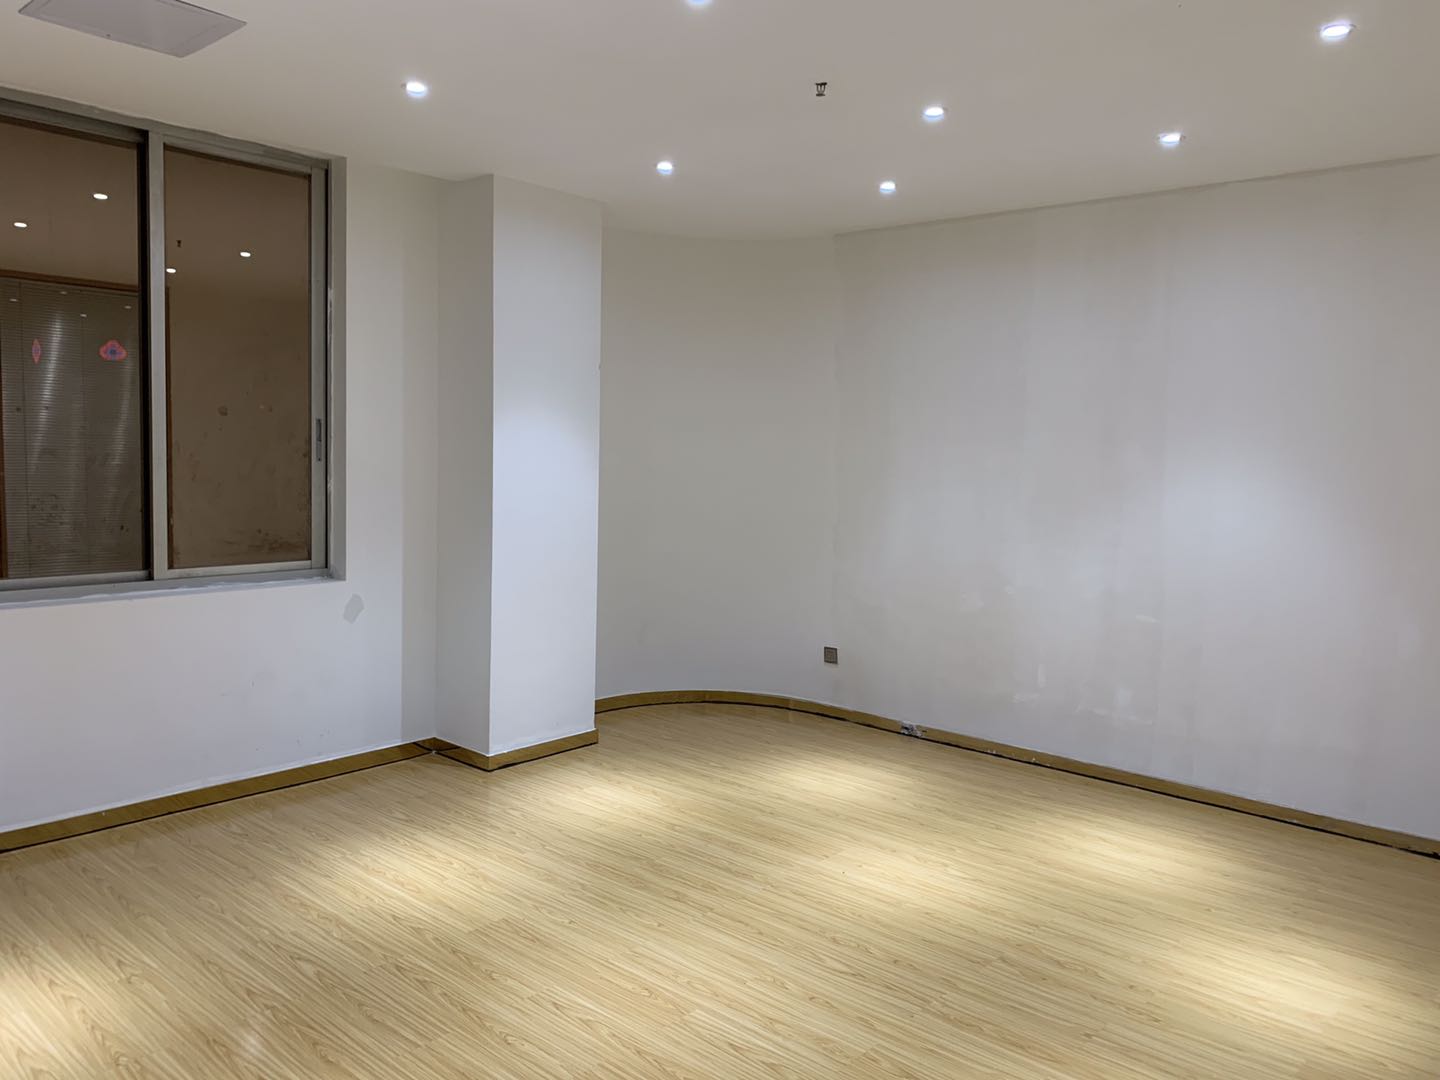 深圳罗湖甲级写字楼2+1格局精装修拎包入住小面积办公室出租。